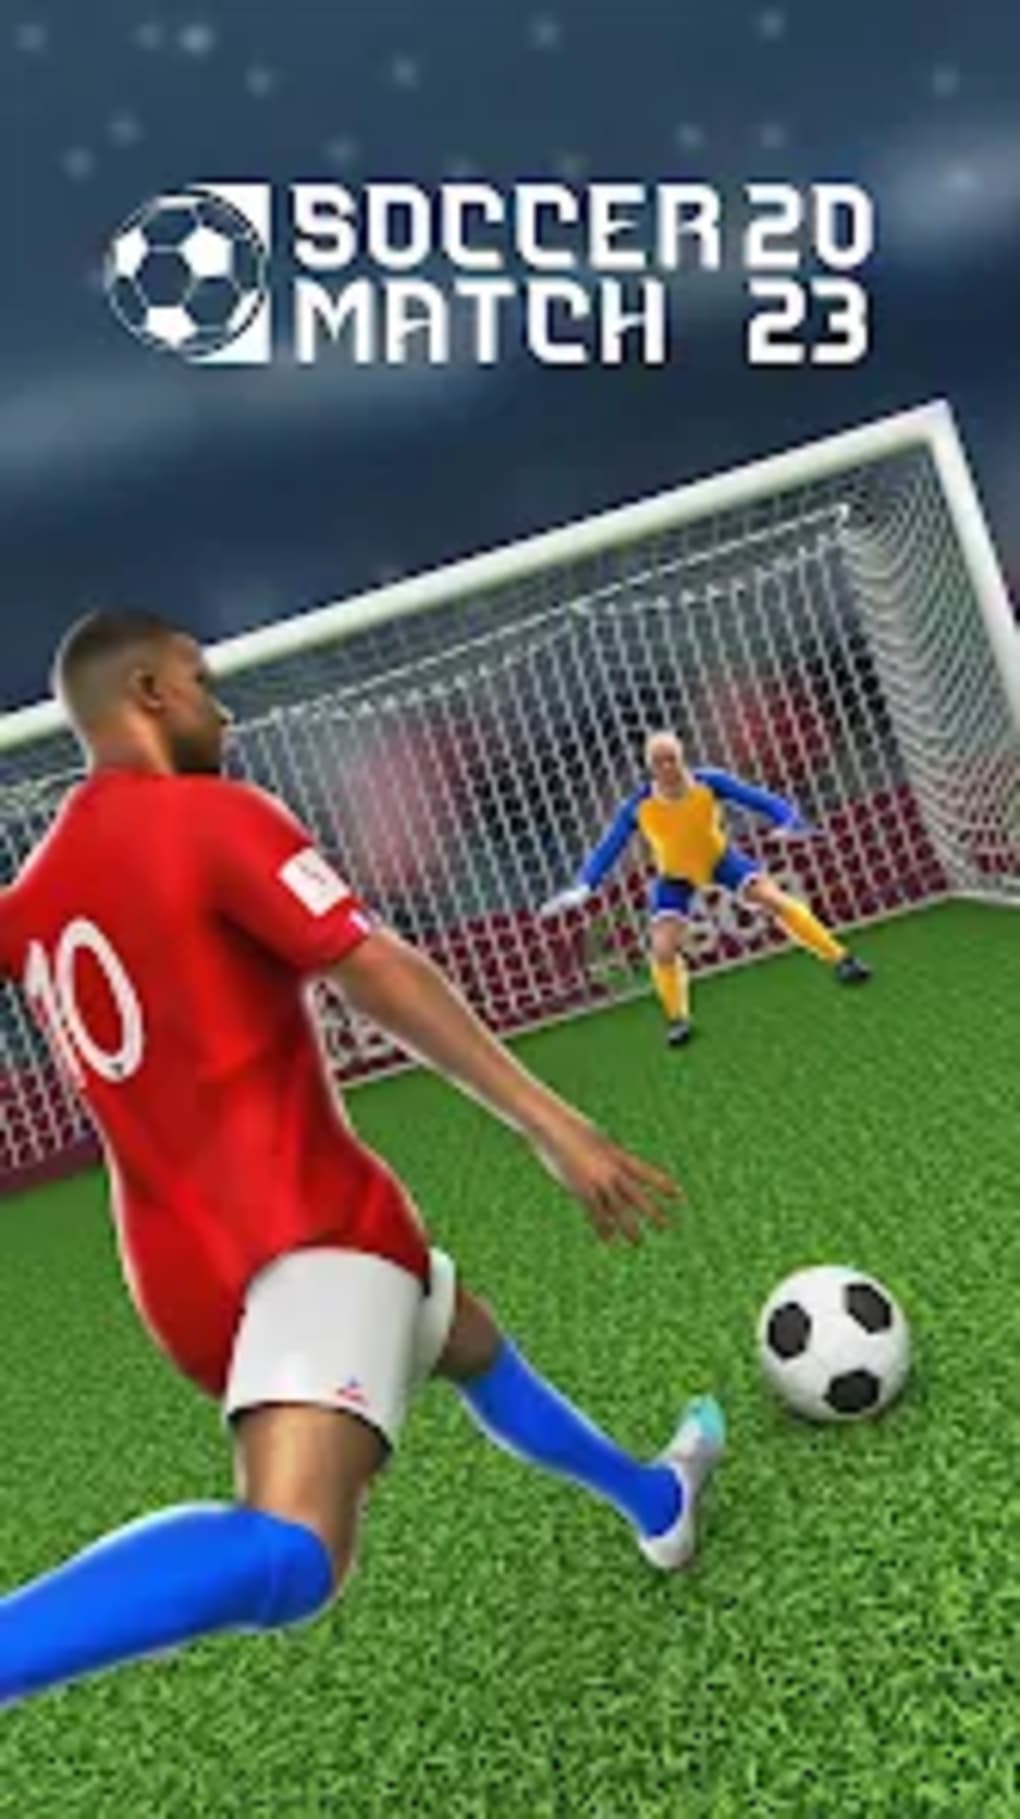 liga da copa moderna do mundo do futebol 2023: campeonato final de futebol  jogos de futebol de chute a gol grátis::Appstore for Android